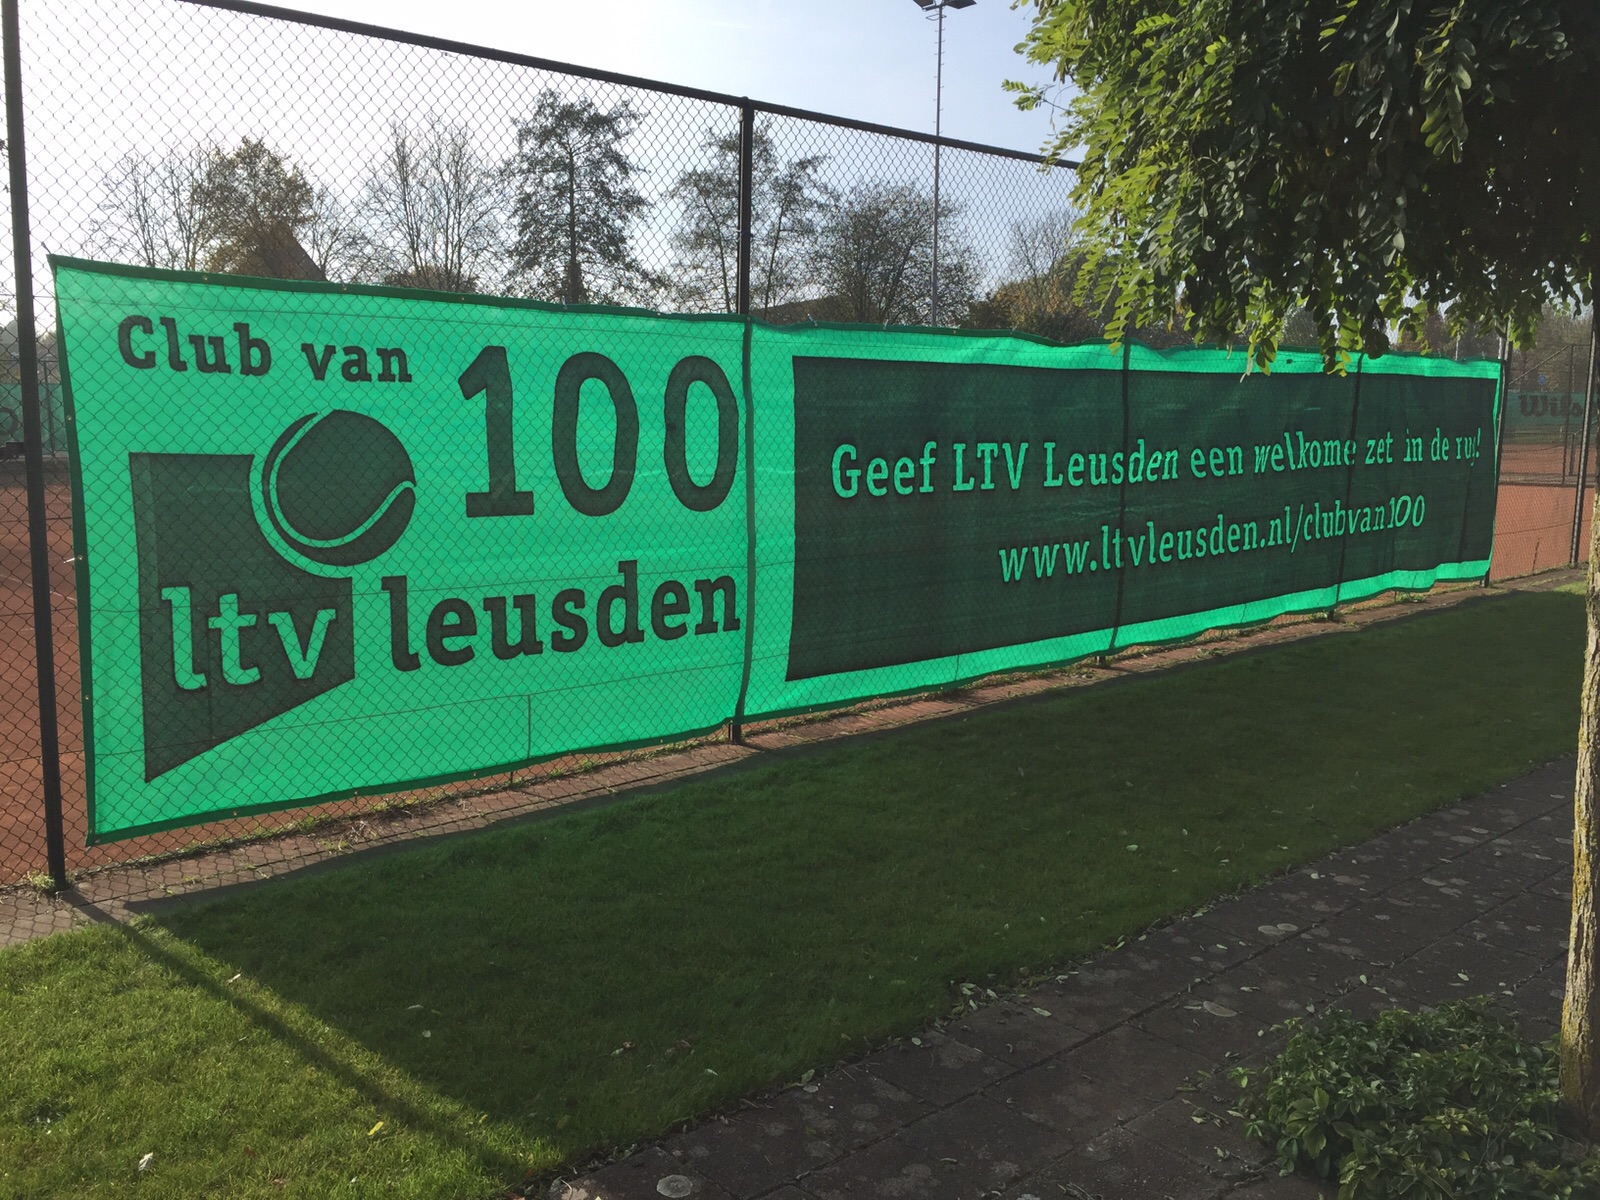 Onder de aandacht … Club van 100 LTV Leusden!